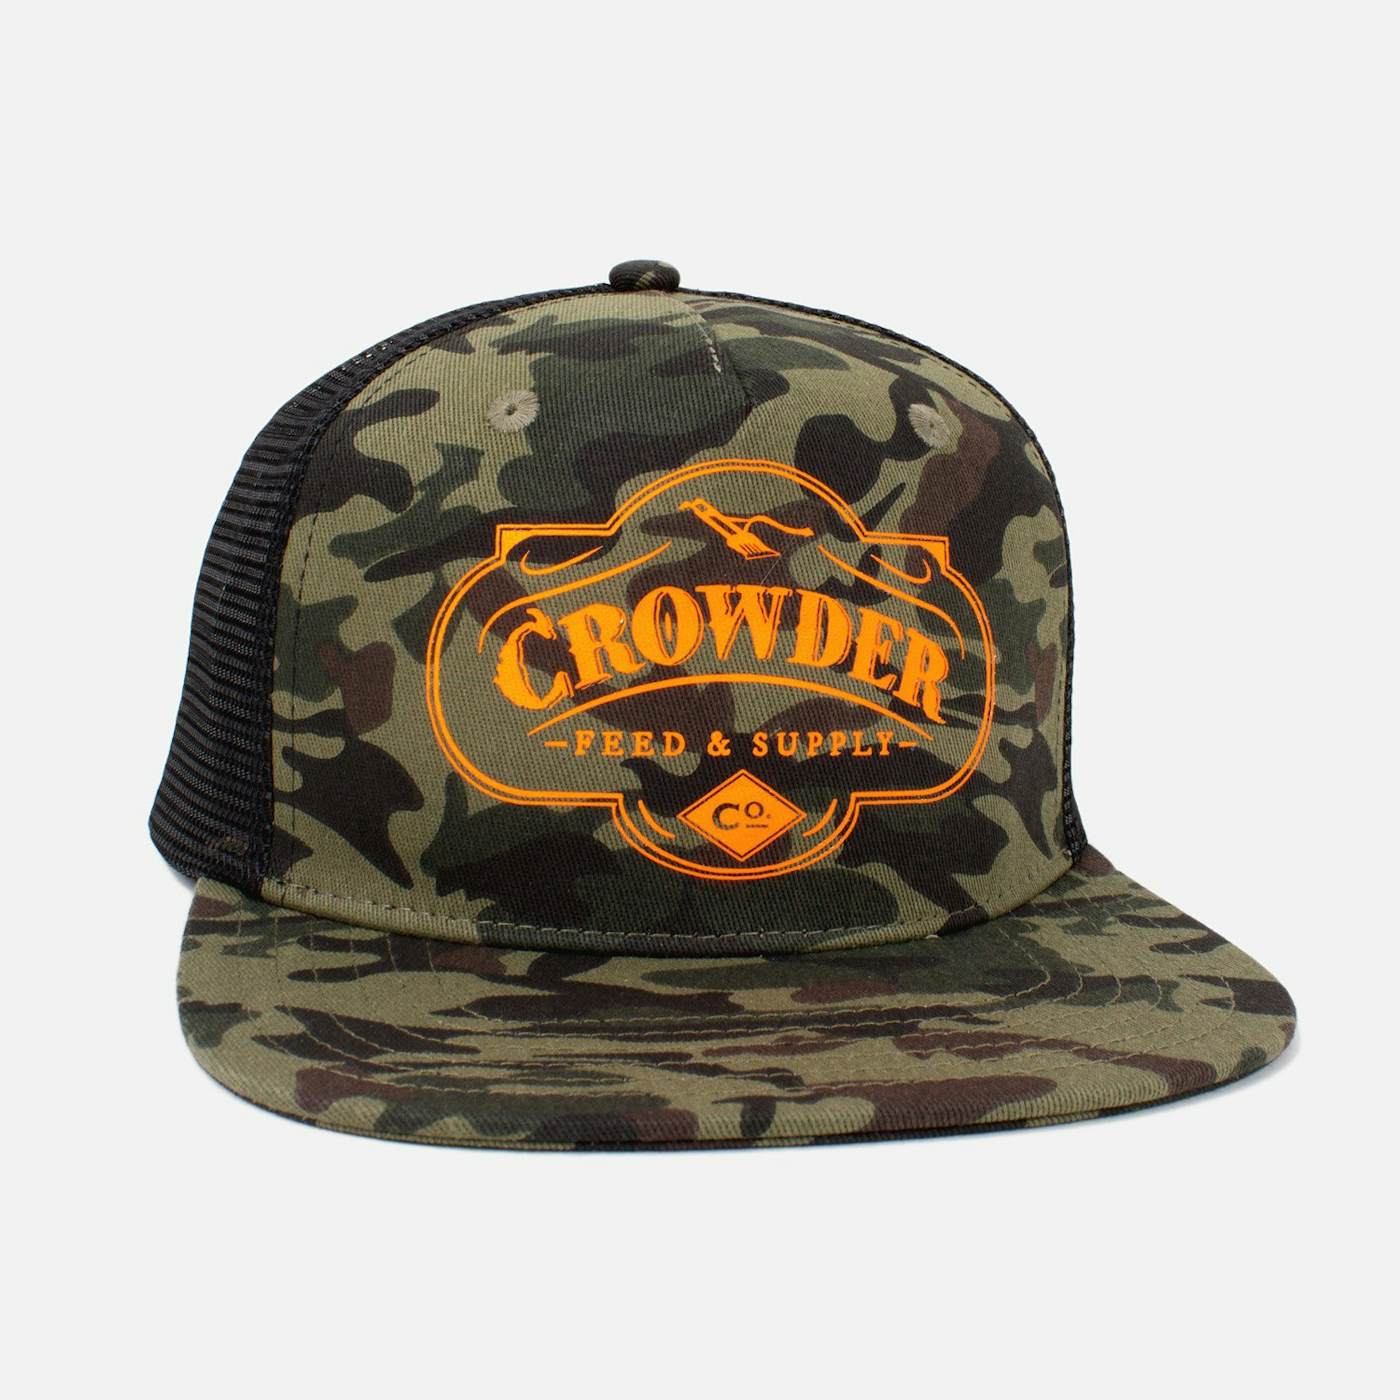 Crowder 'Feed & Supply' Trucker Hat - Camo